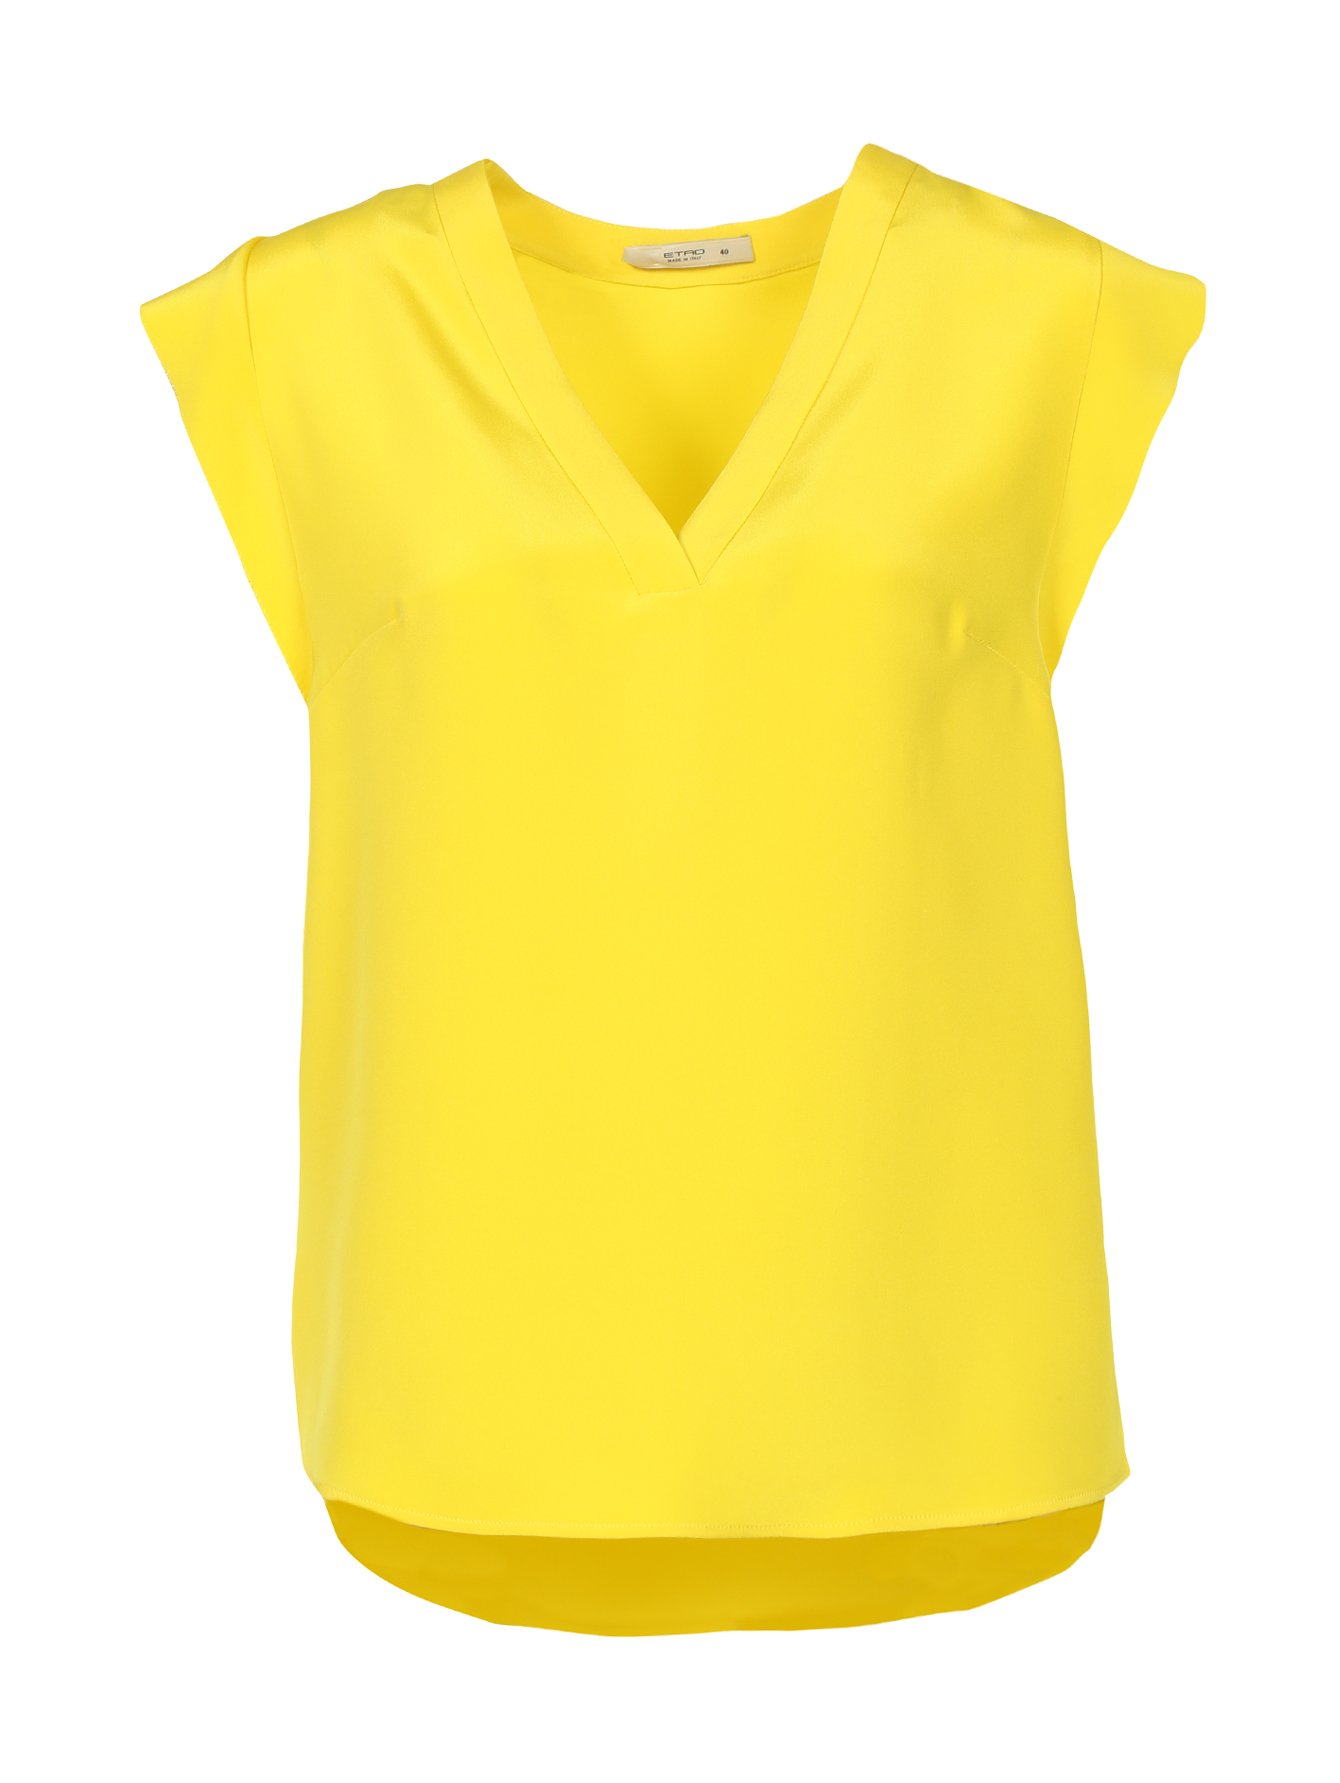 Желтая блузка